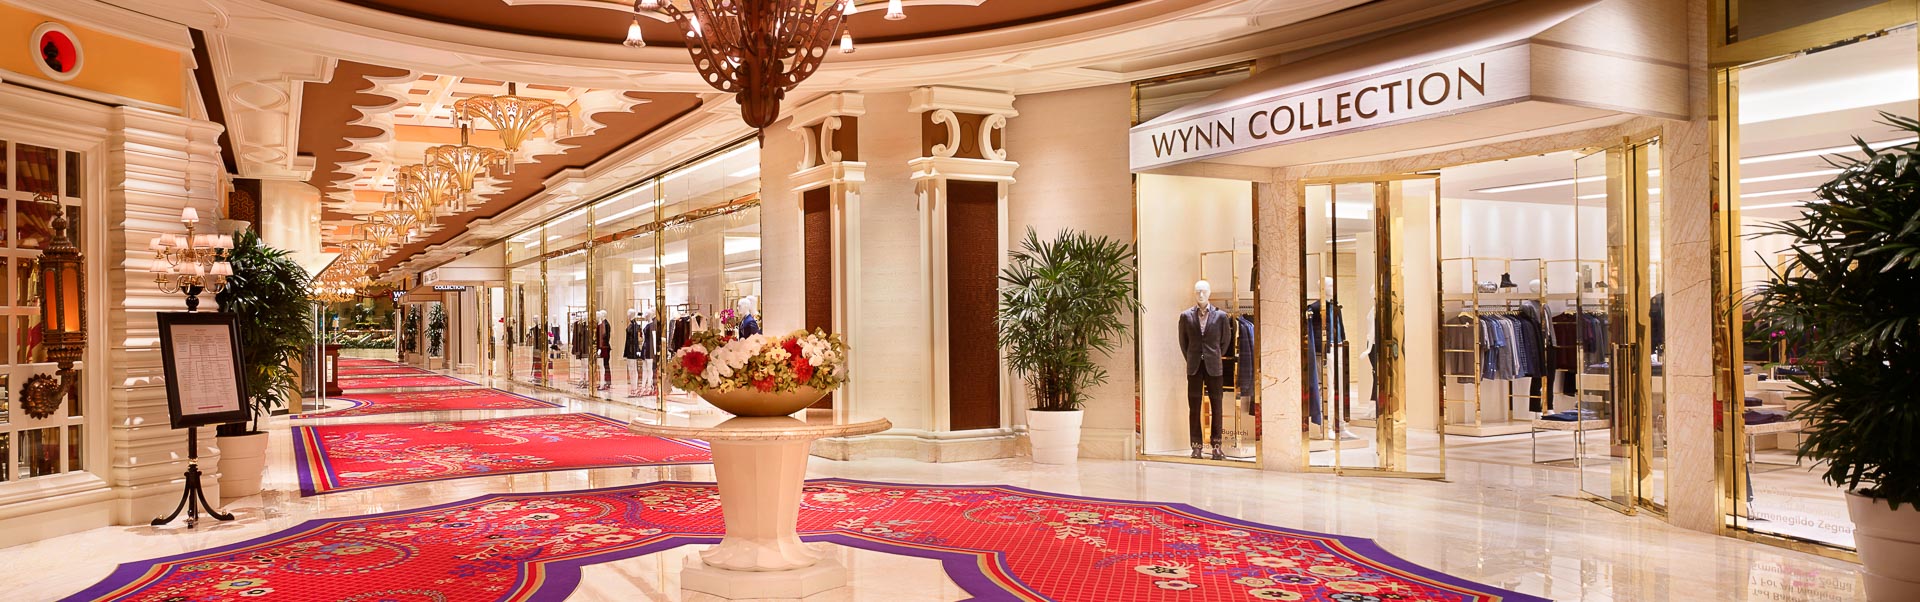 Luxury Las Vegas Shopping Mall | The Shops at Wynn & Encore